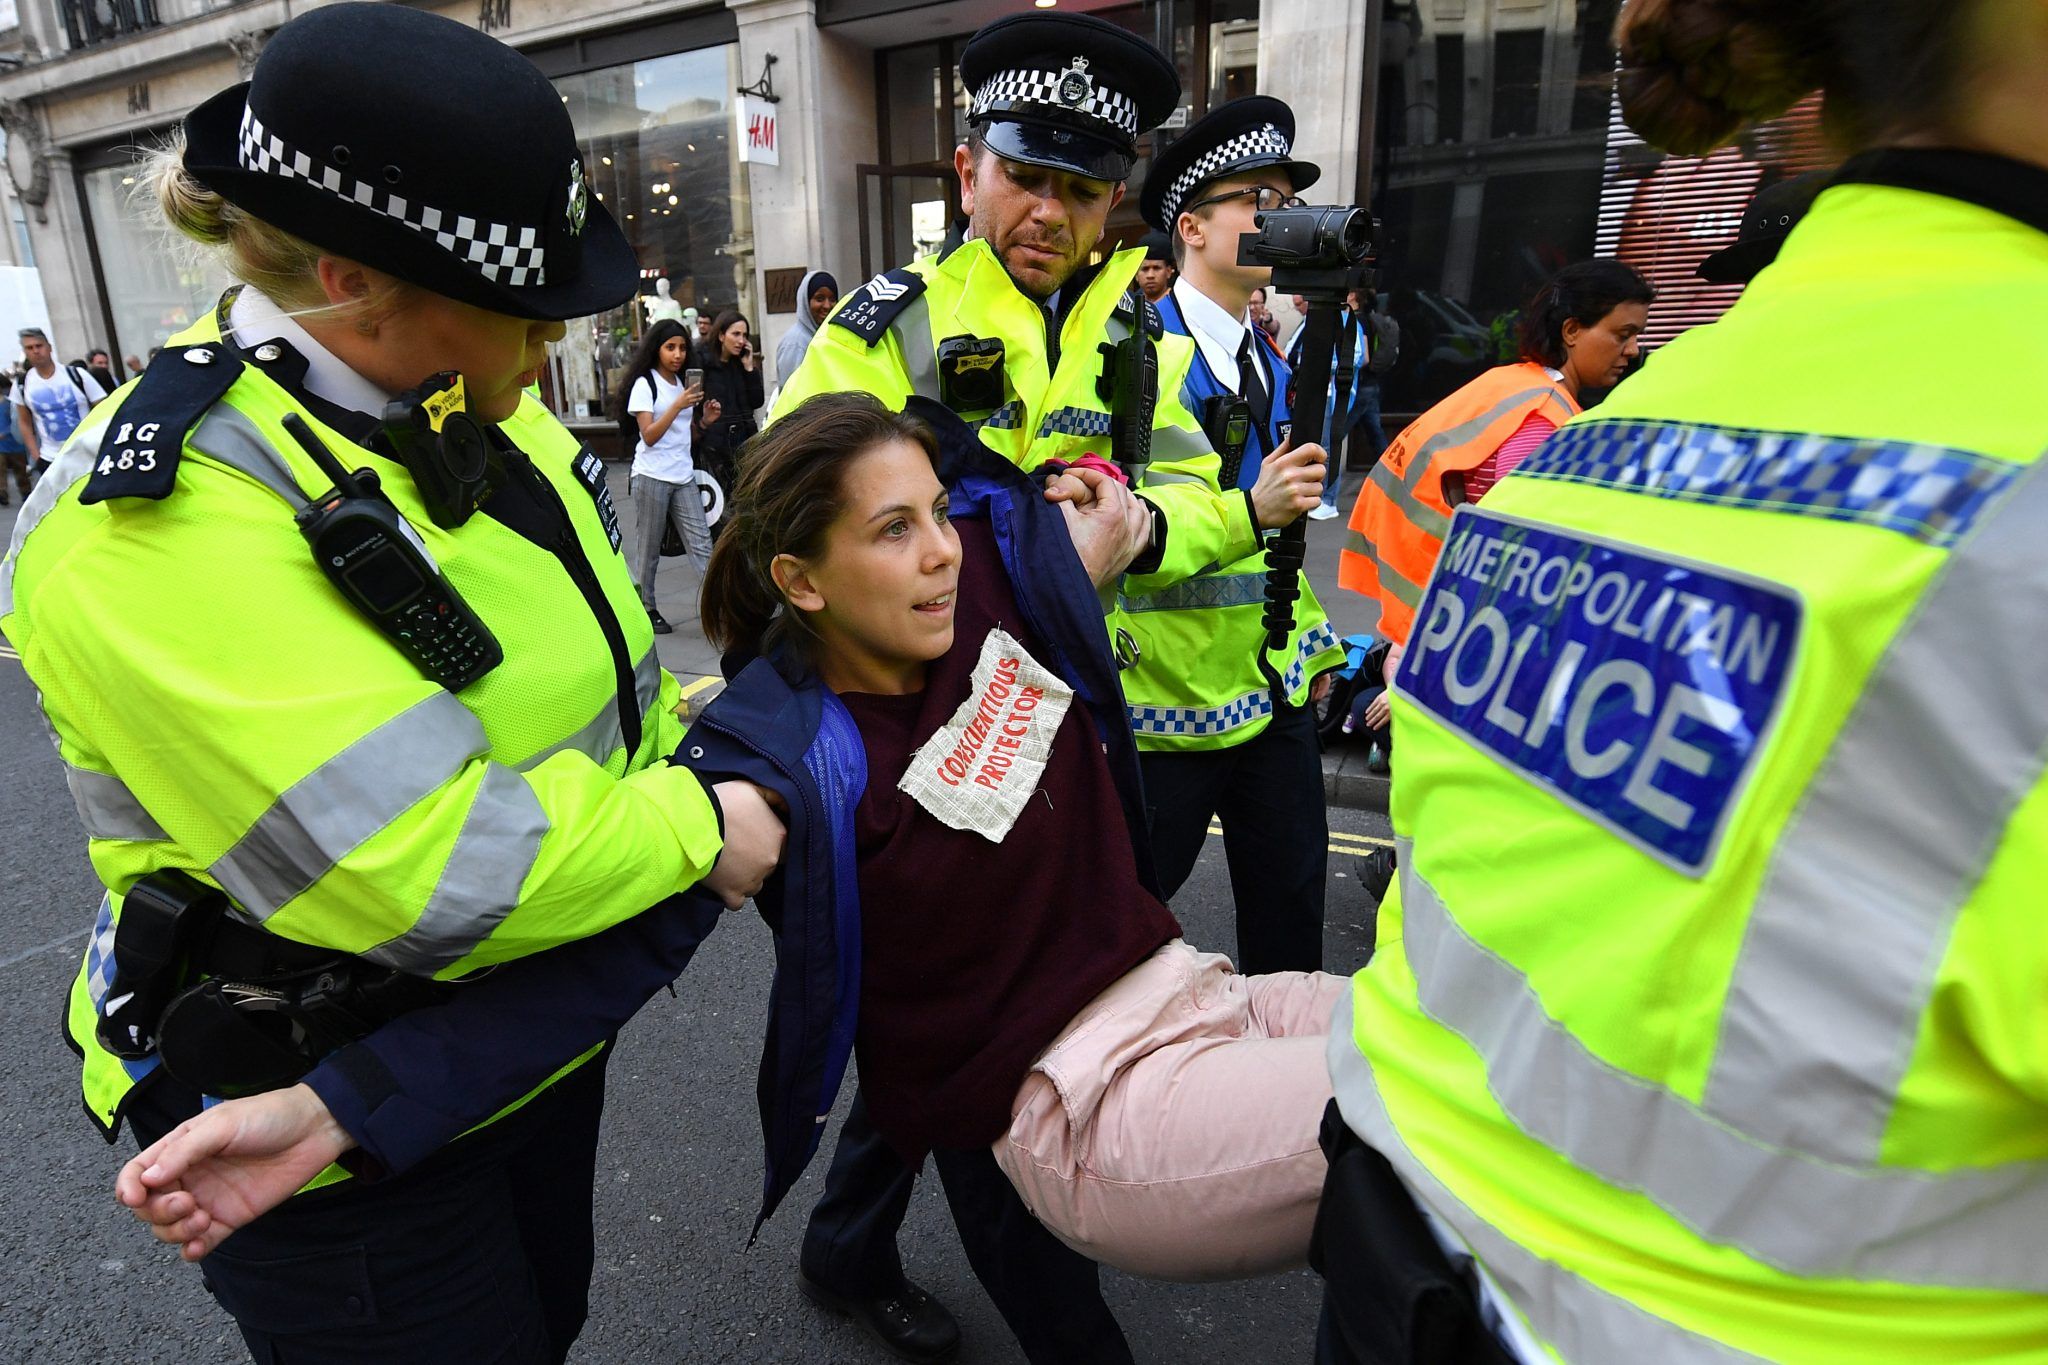 Metropolitan Police officers arrest an Extinction Rebellion protester